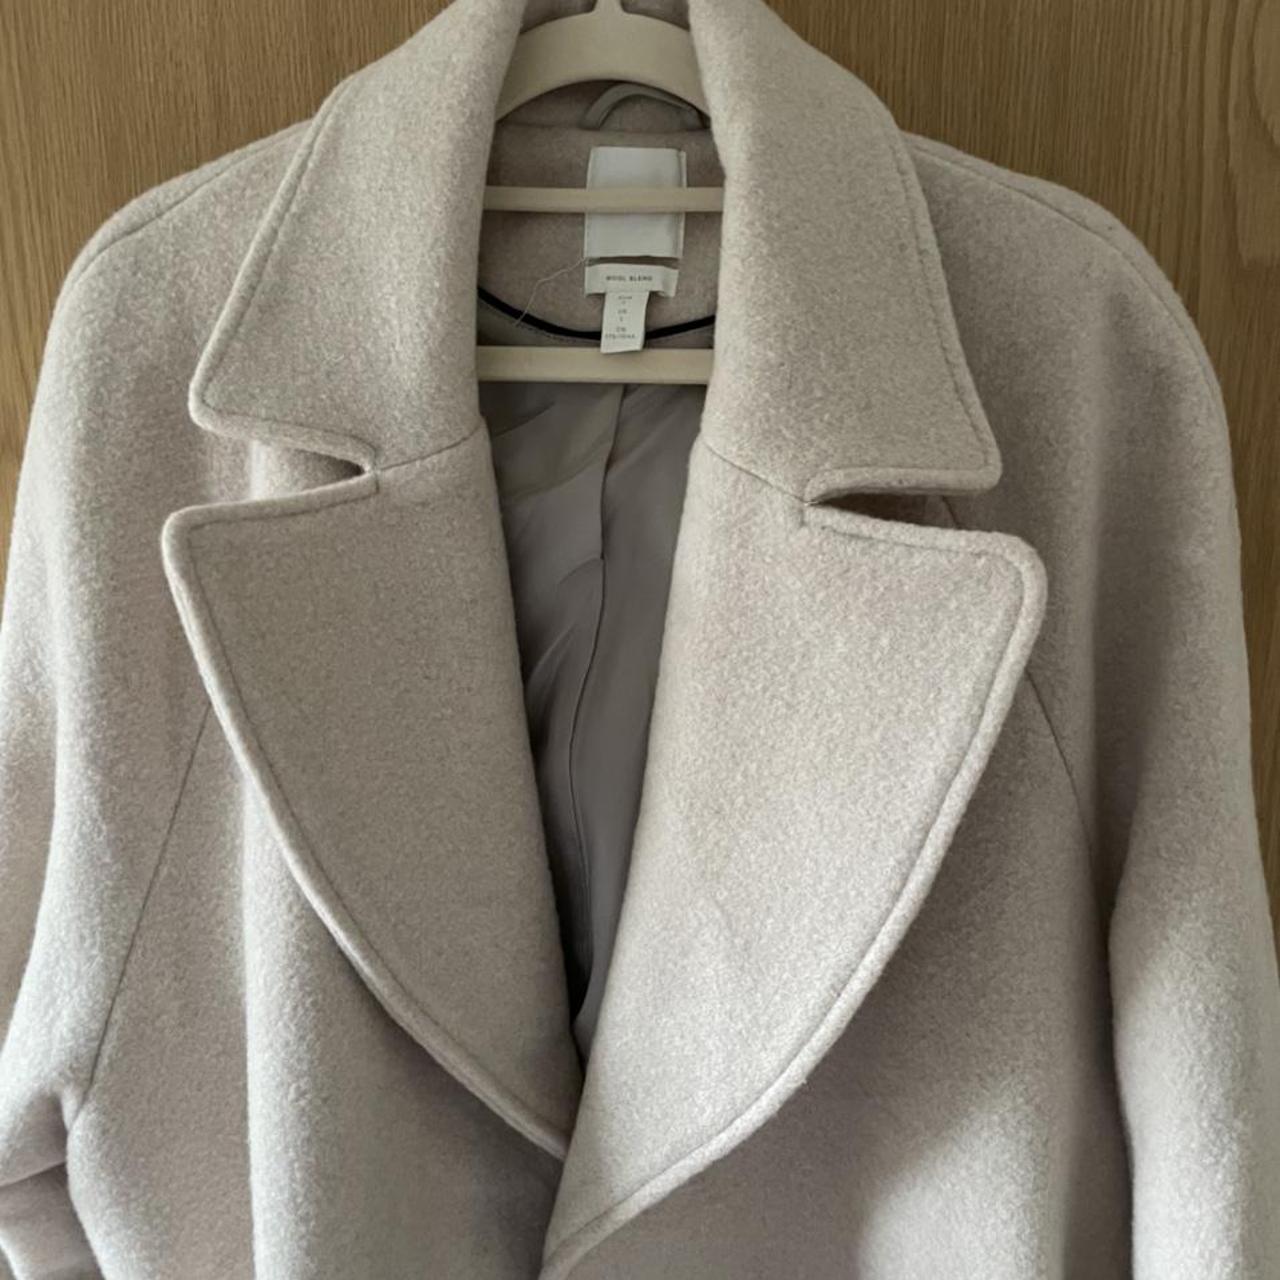 H&M cream/beige wool coat, lightly used, in great... - Depop